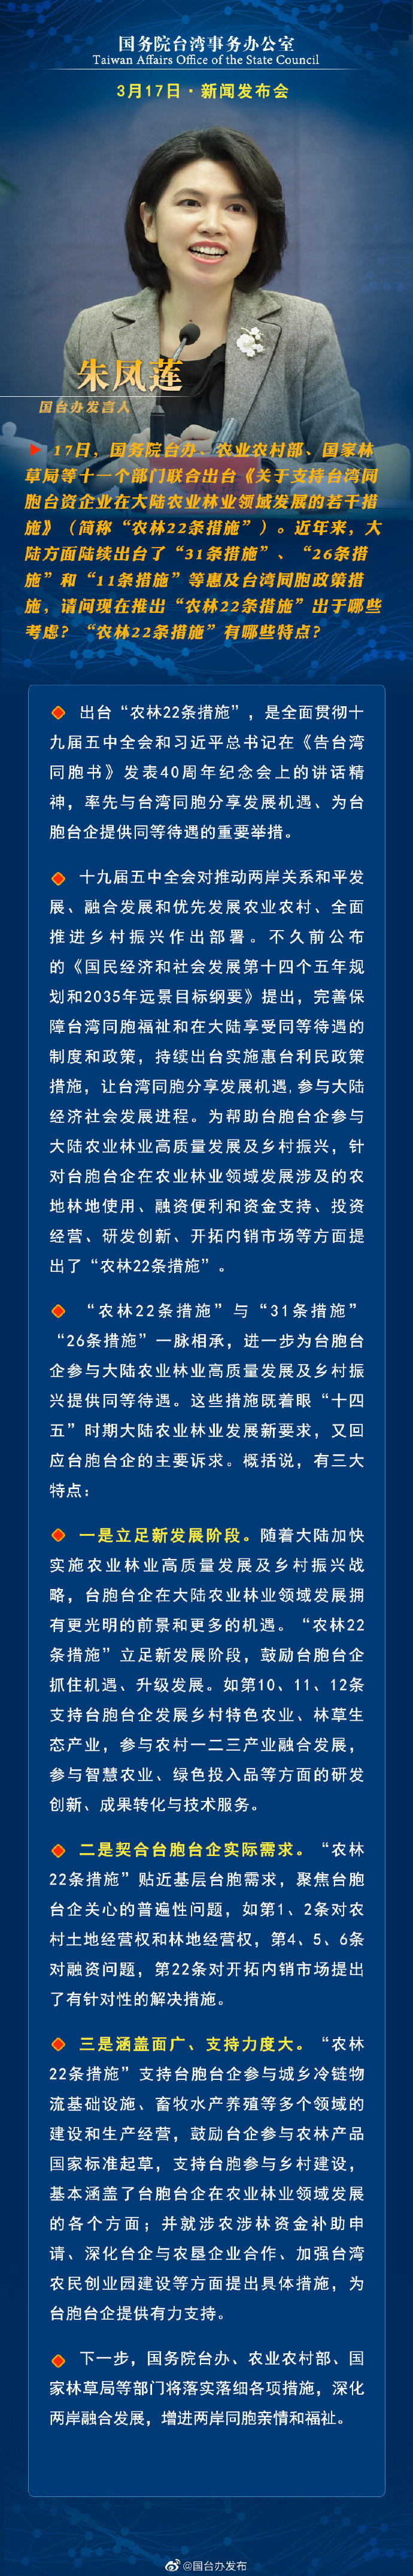 国务院台湾事务办公室3月17日·新闻发布会_fororder_a1